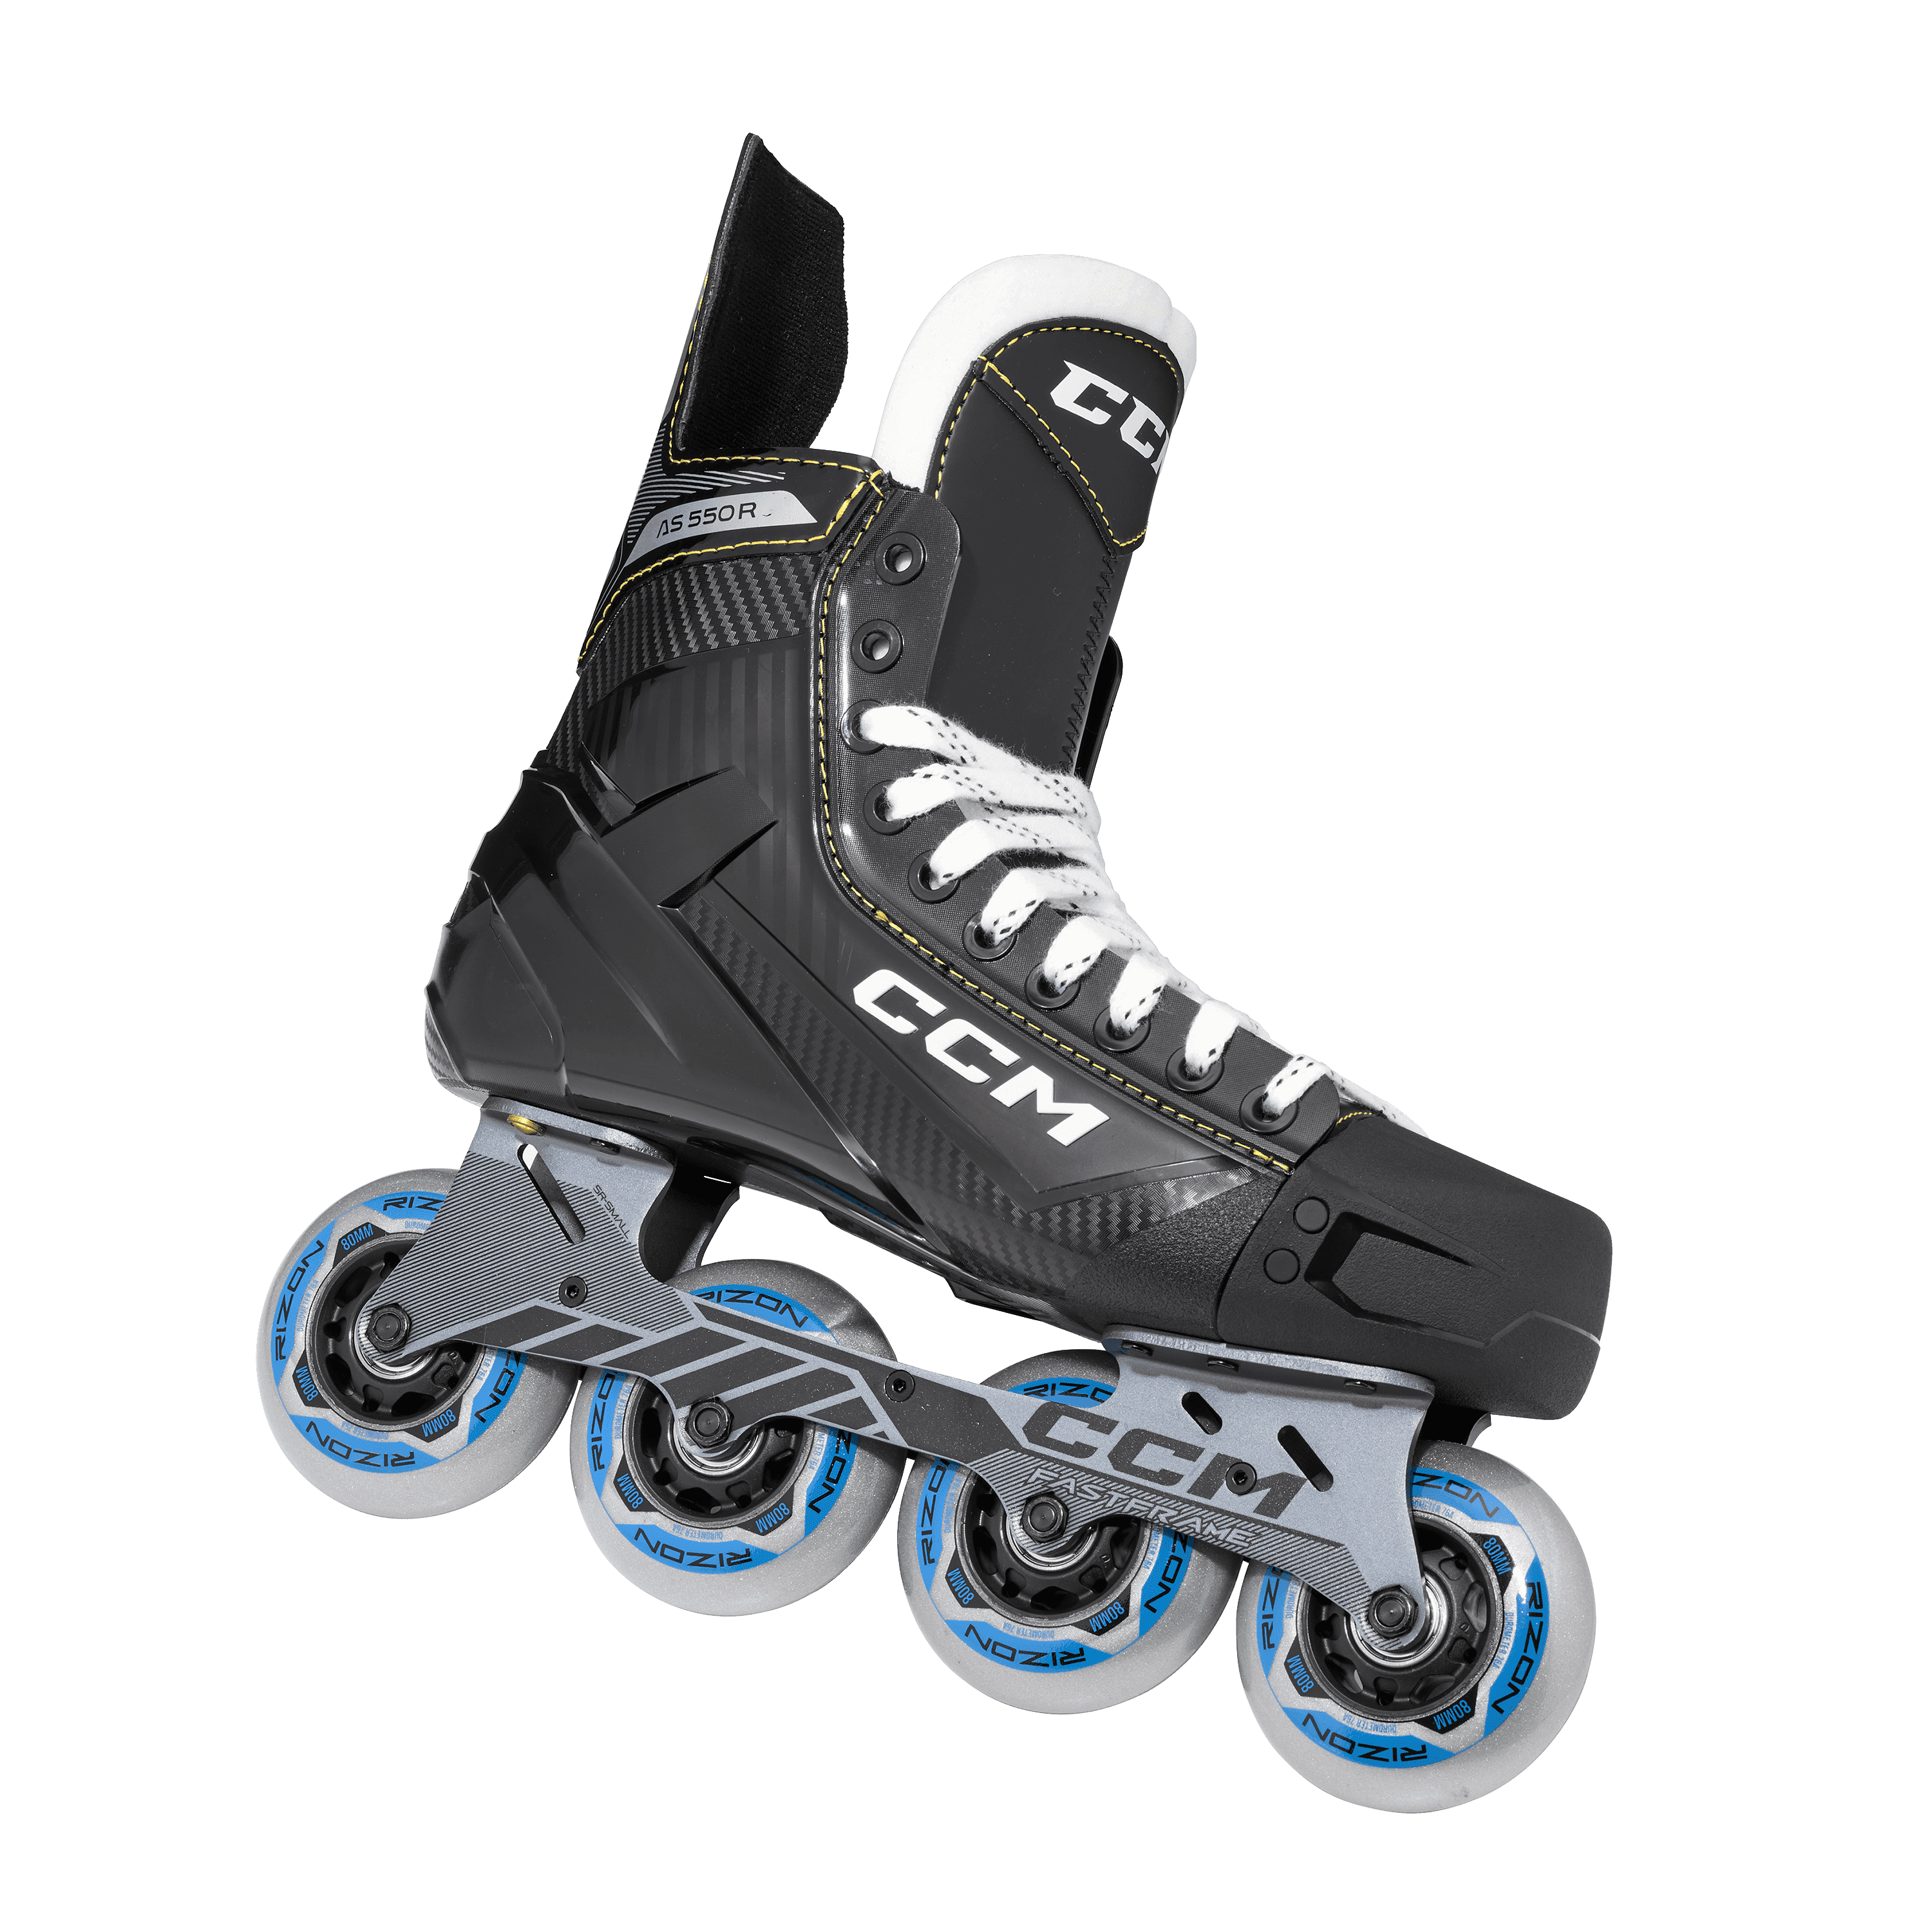 Rollerhockey Skate CCM Tacks AS550 INT 